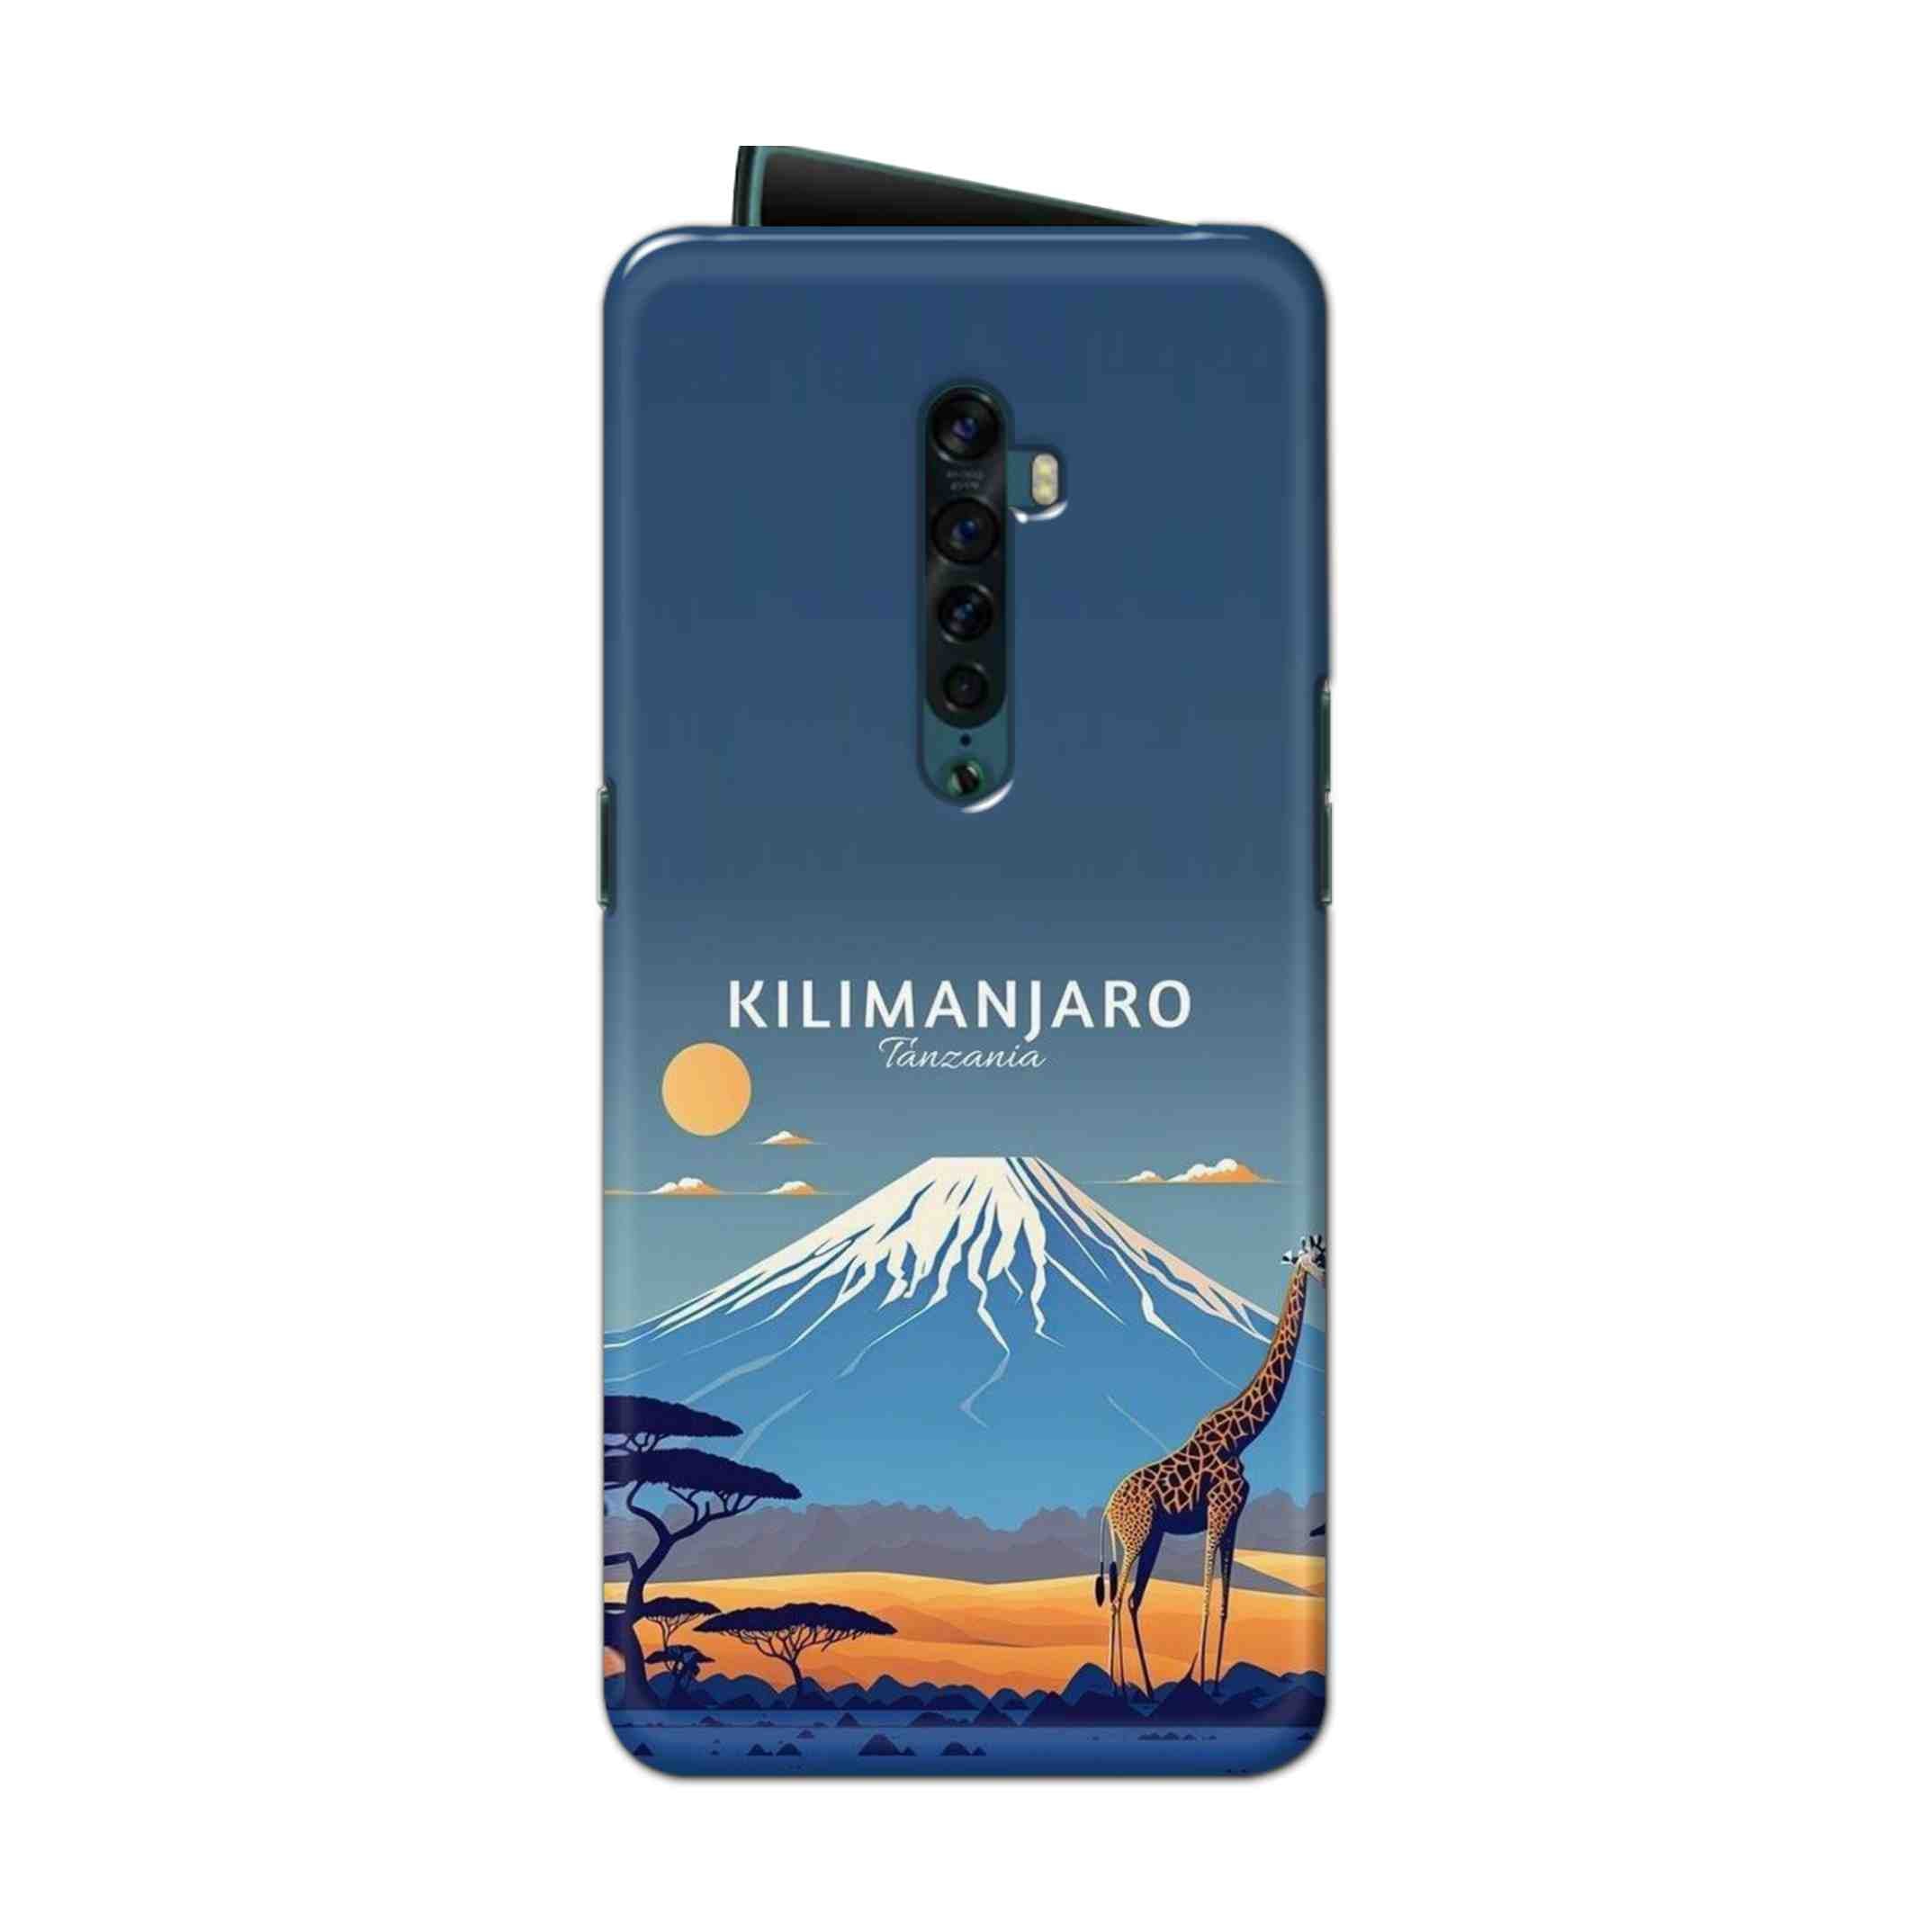 Buy Kilimanjaro Hard Back Mobile Phone Case Cover For Oppo Reno 2 Online